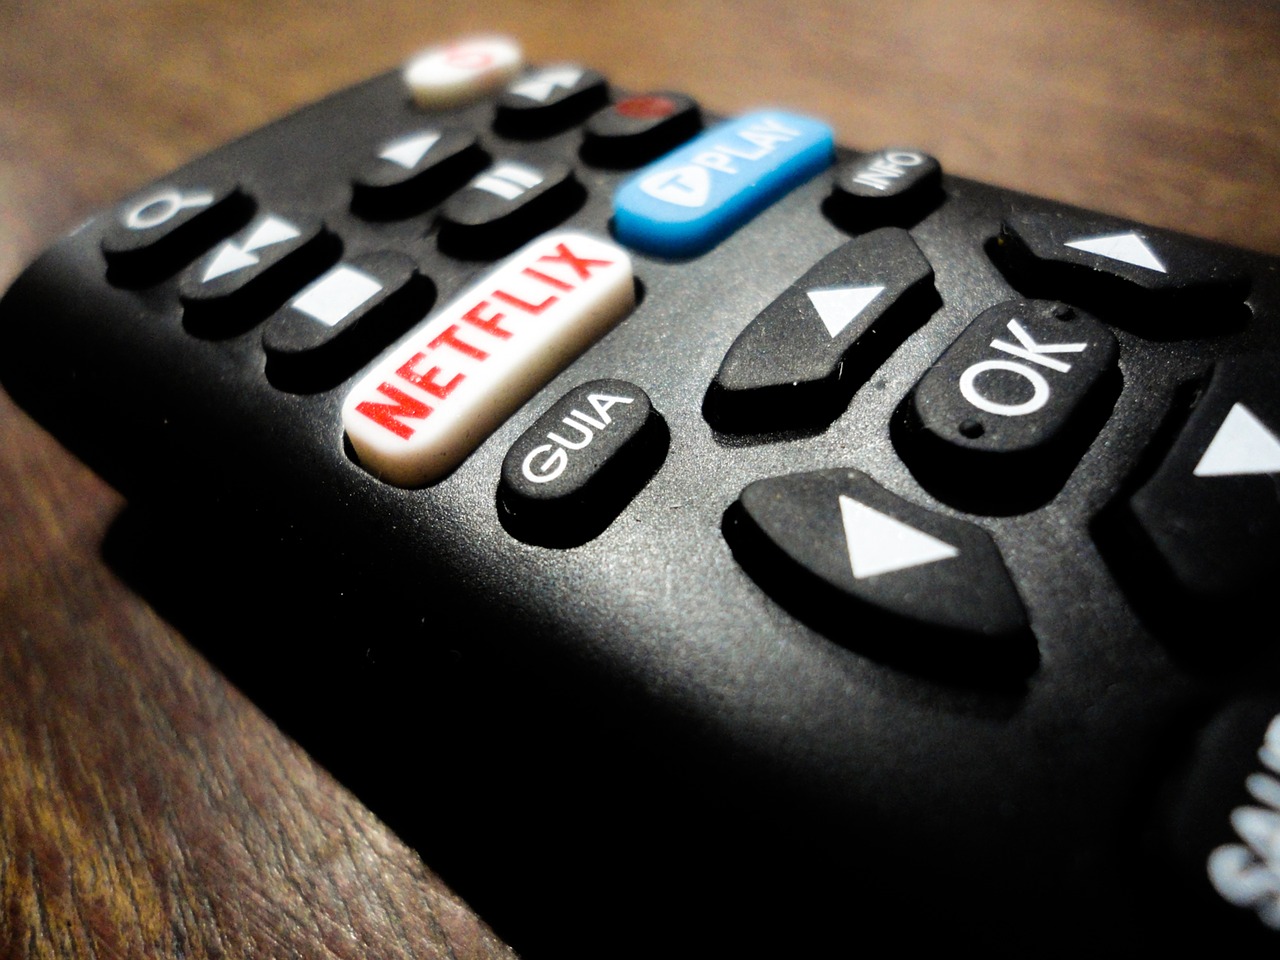 descubre como proteger tu cuenta de servicio de streaming como Netflix